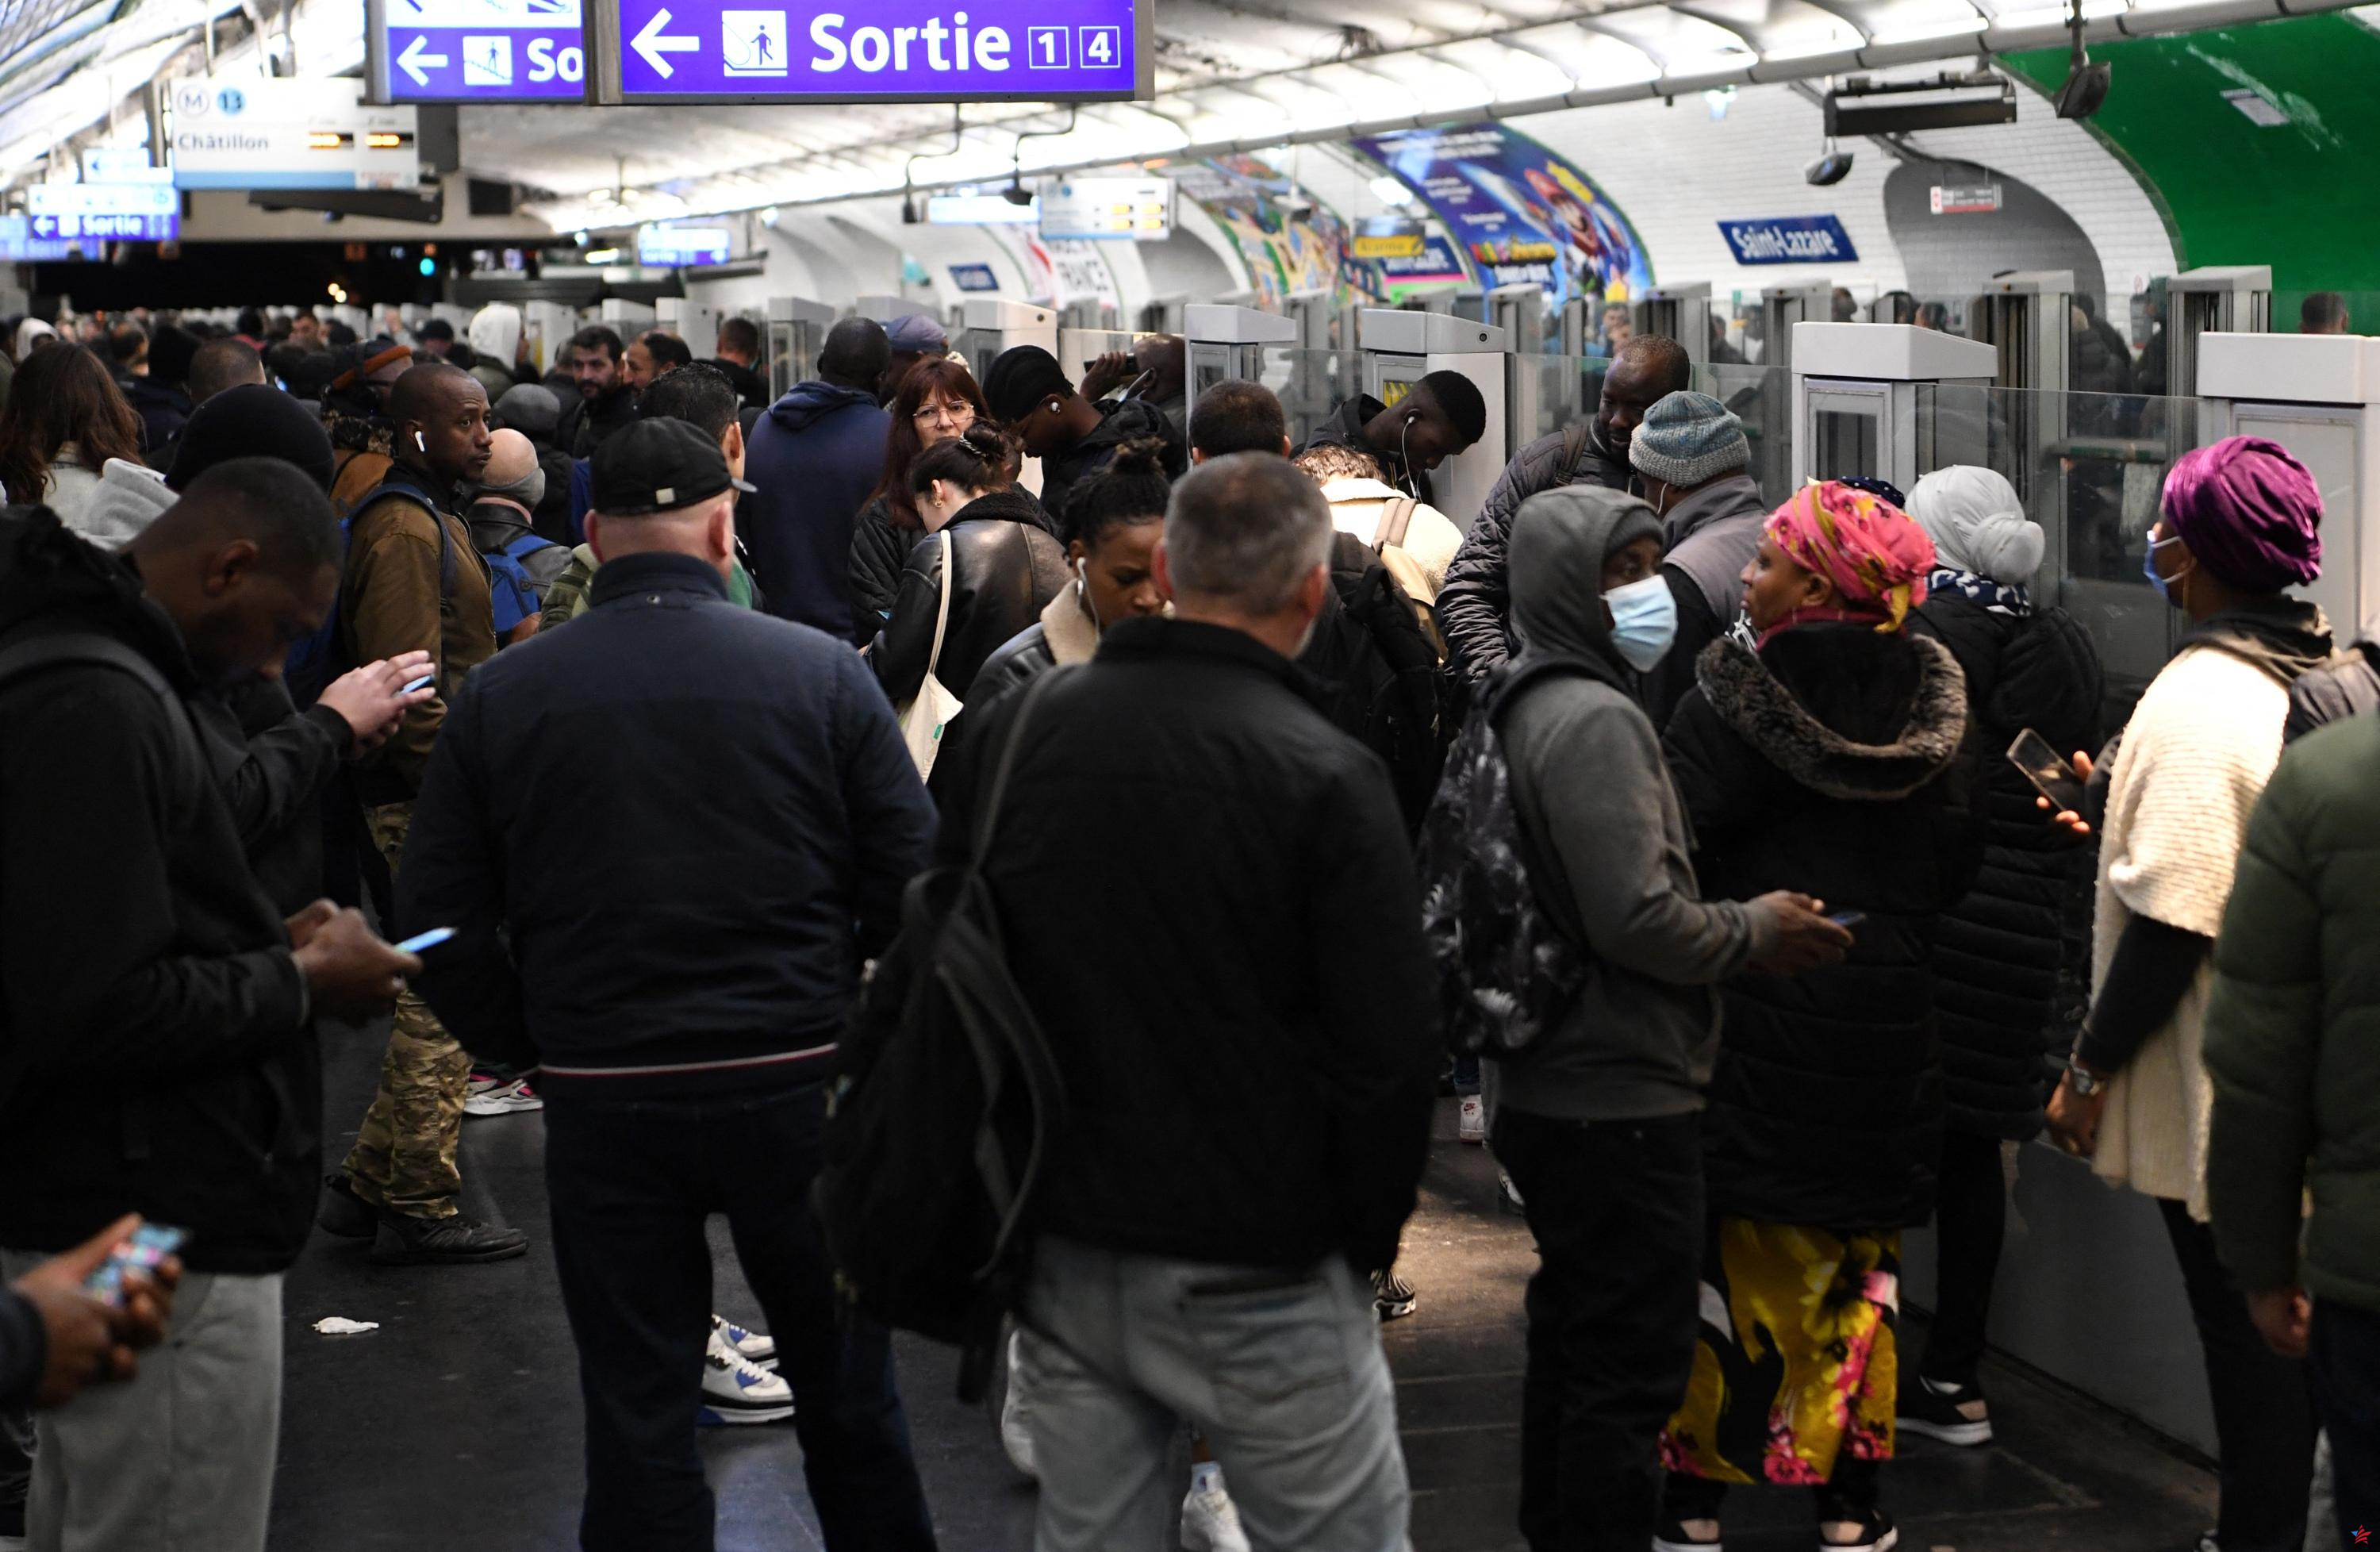 “Esto es todo, por el momento…”: “La Voix” del programa Secret Story llega este jueves al RER y al metro de París